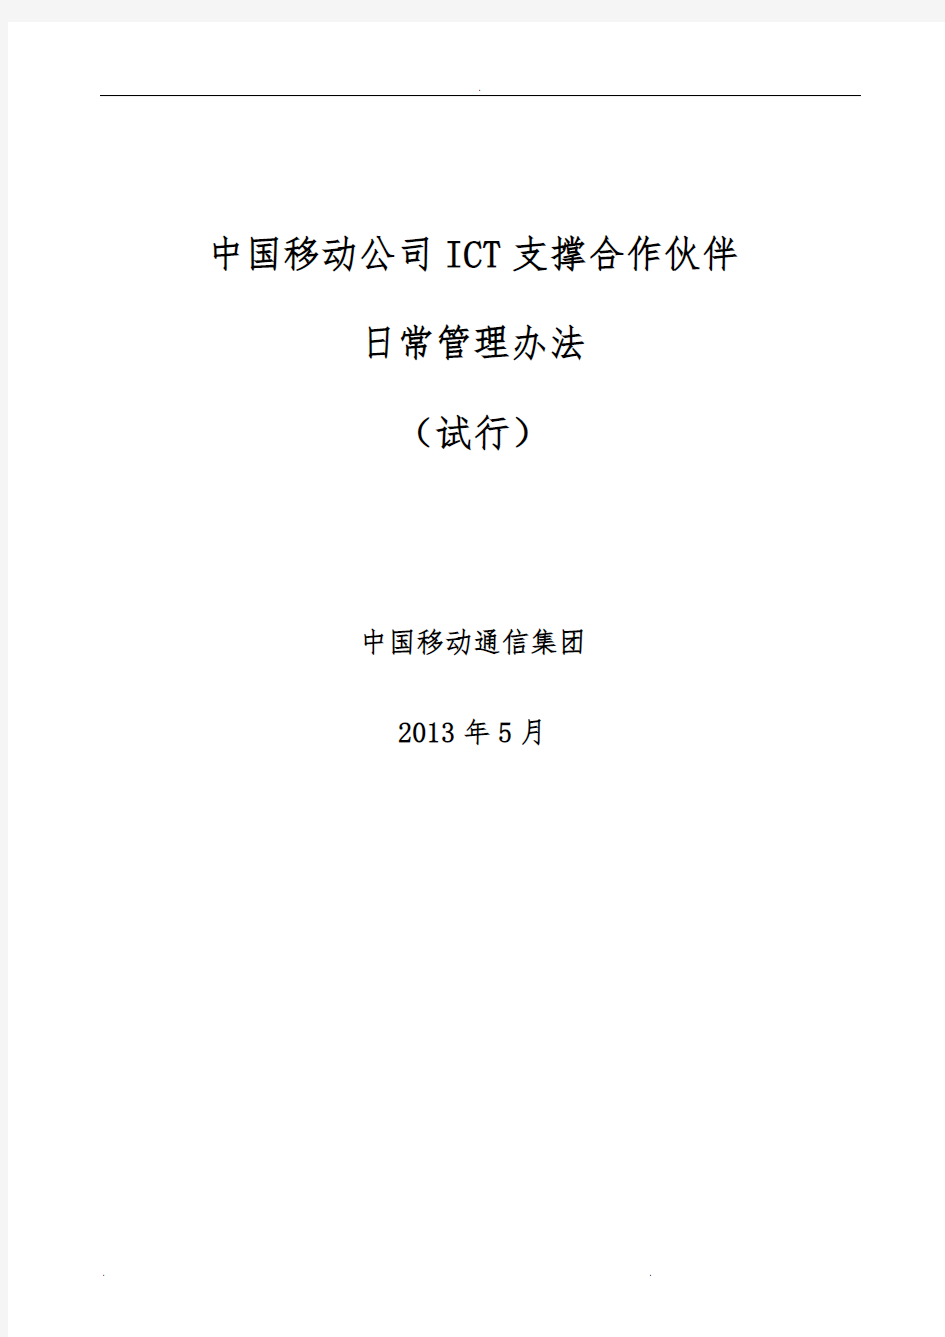 政企客户ICT支撑合作伙伴日常管理办法(ISO)3.0